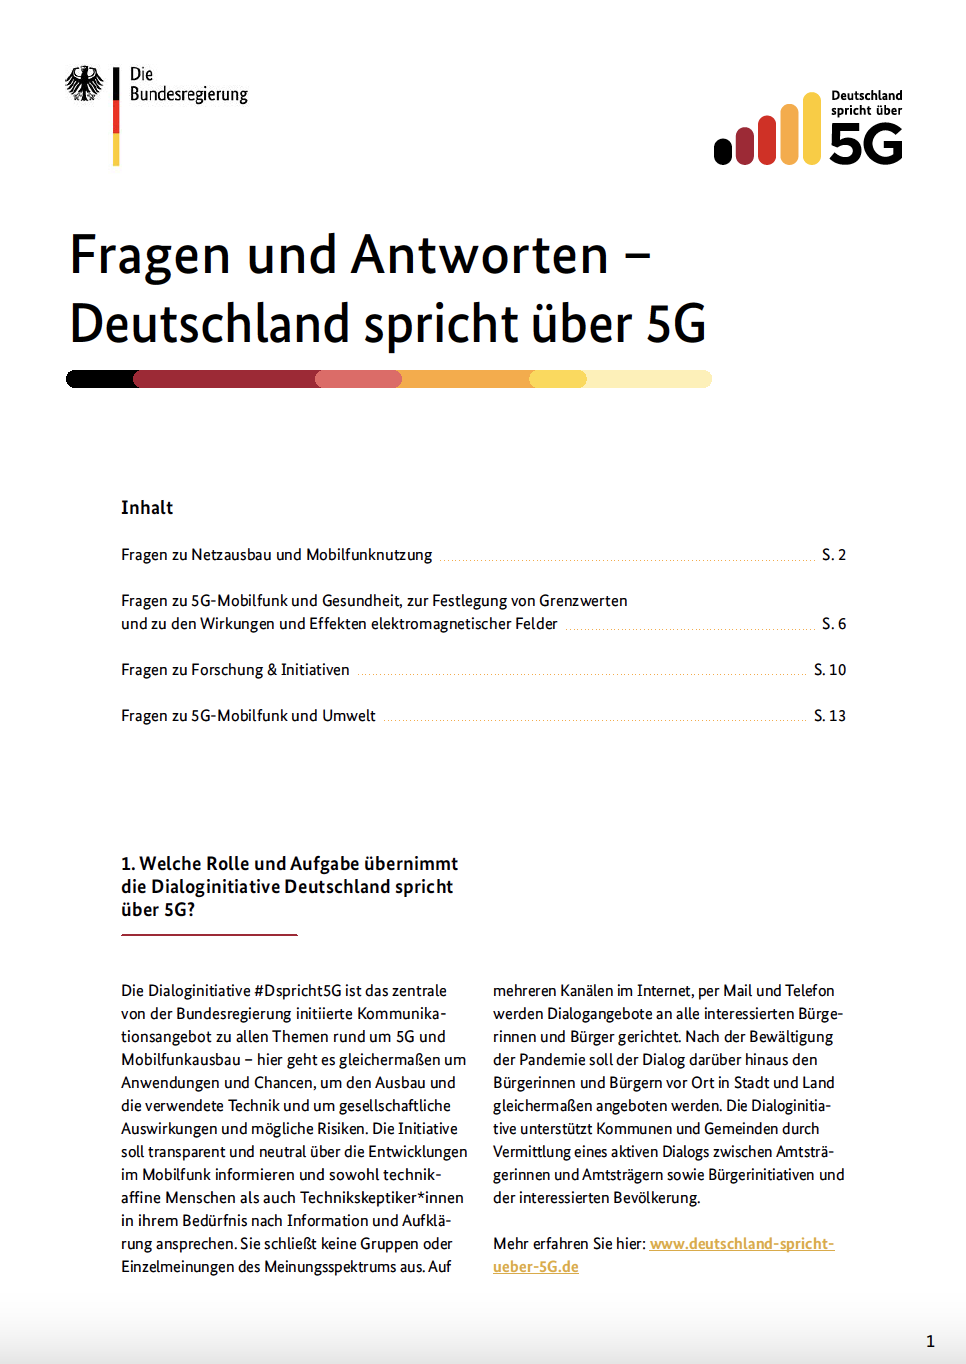 Das Deckblatt des FAQ von Deutschland spricht über 5G